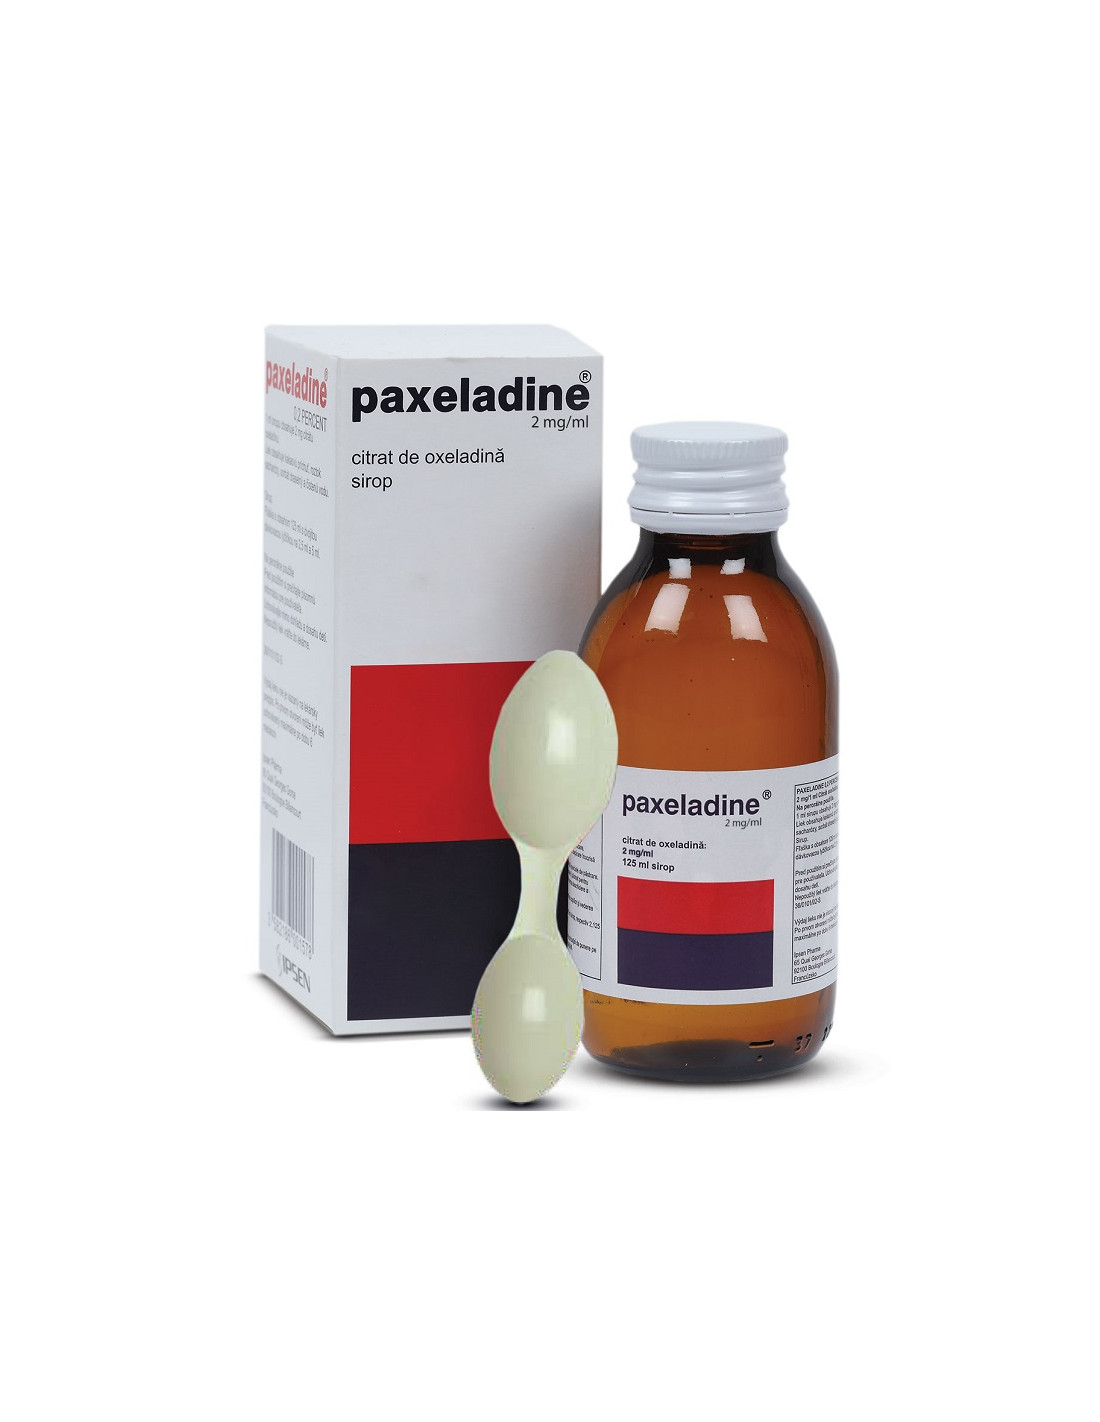 Paxeladine, 125 ml, Beaufour Ipsen - TUSE-SEACA - IPSEN PHARMA S.A.S.